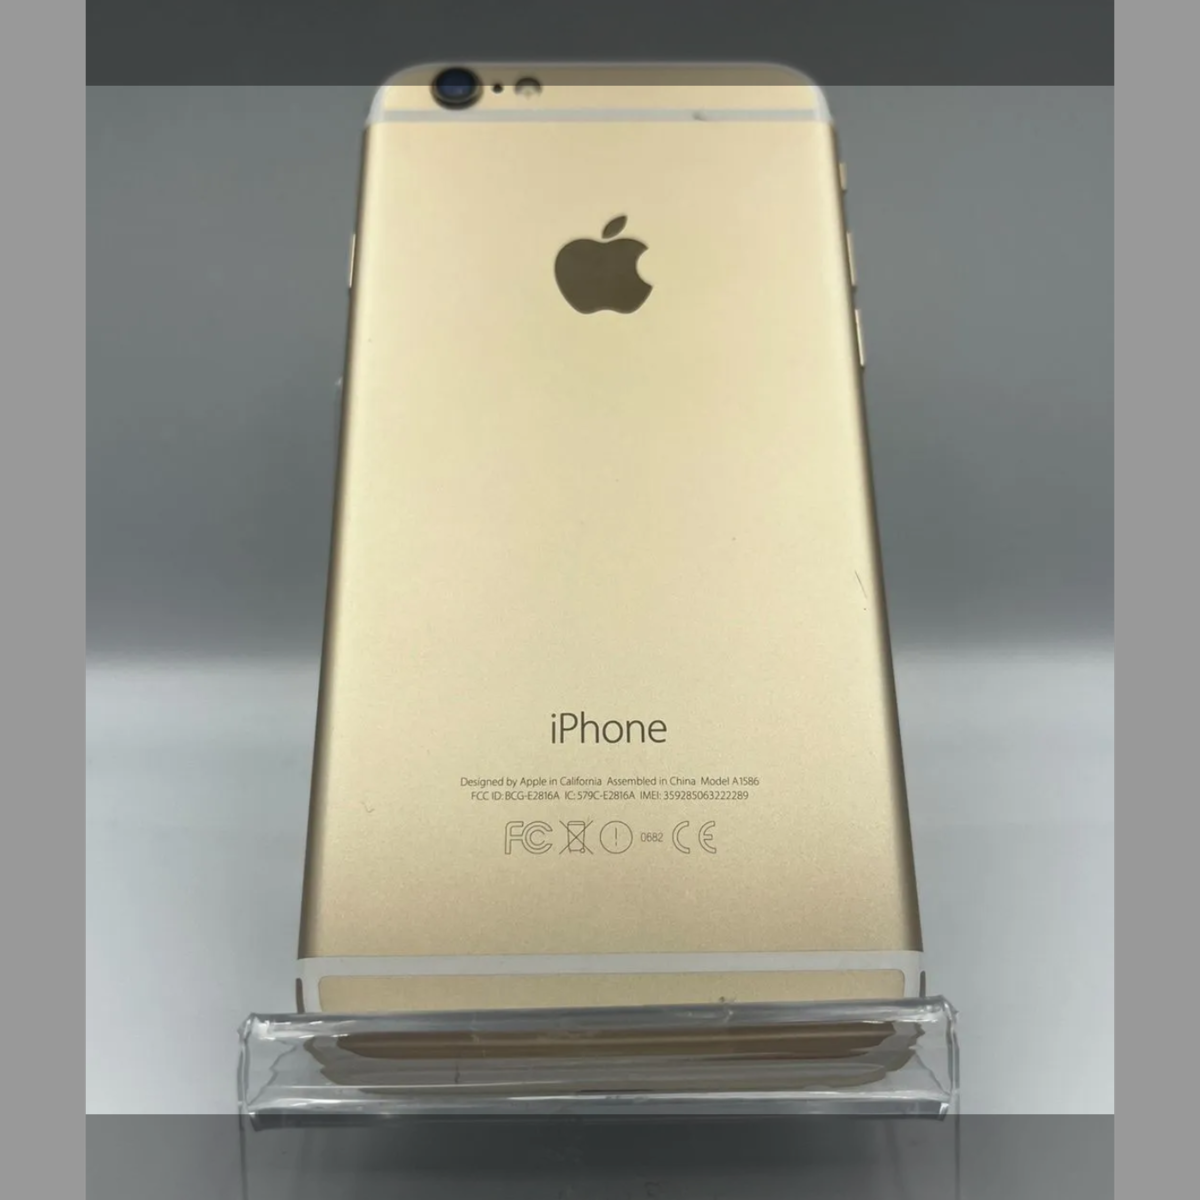 超美品 au iPhone6 PLUS 16GB ゴールド